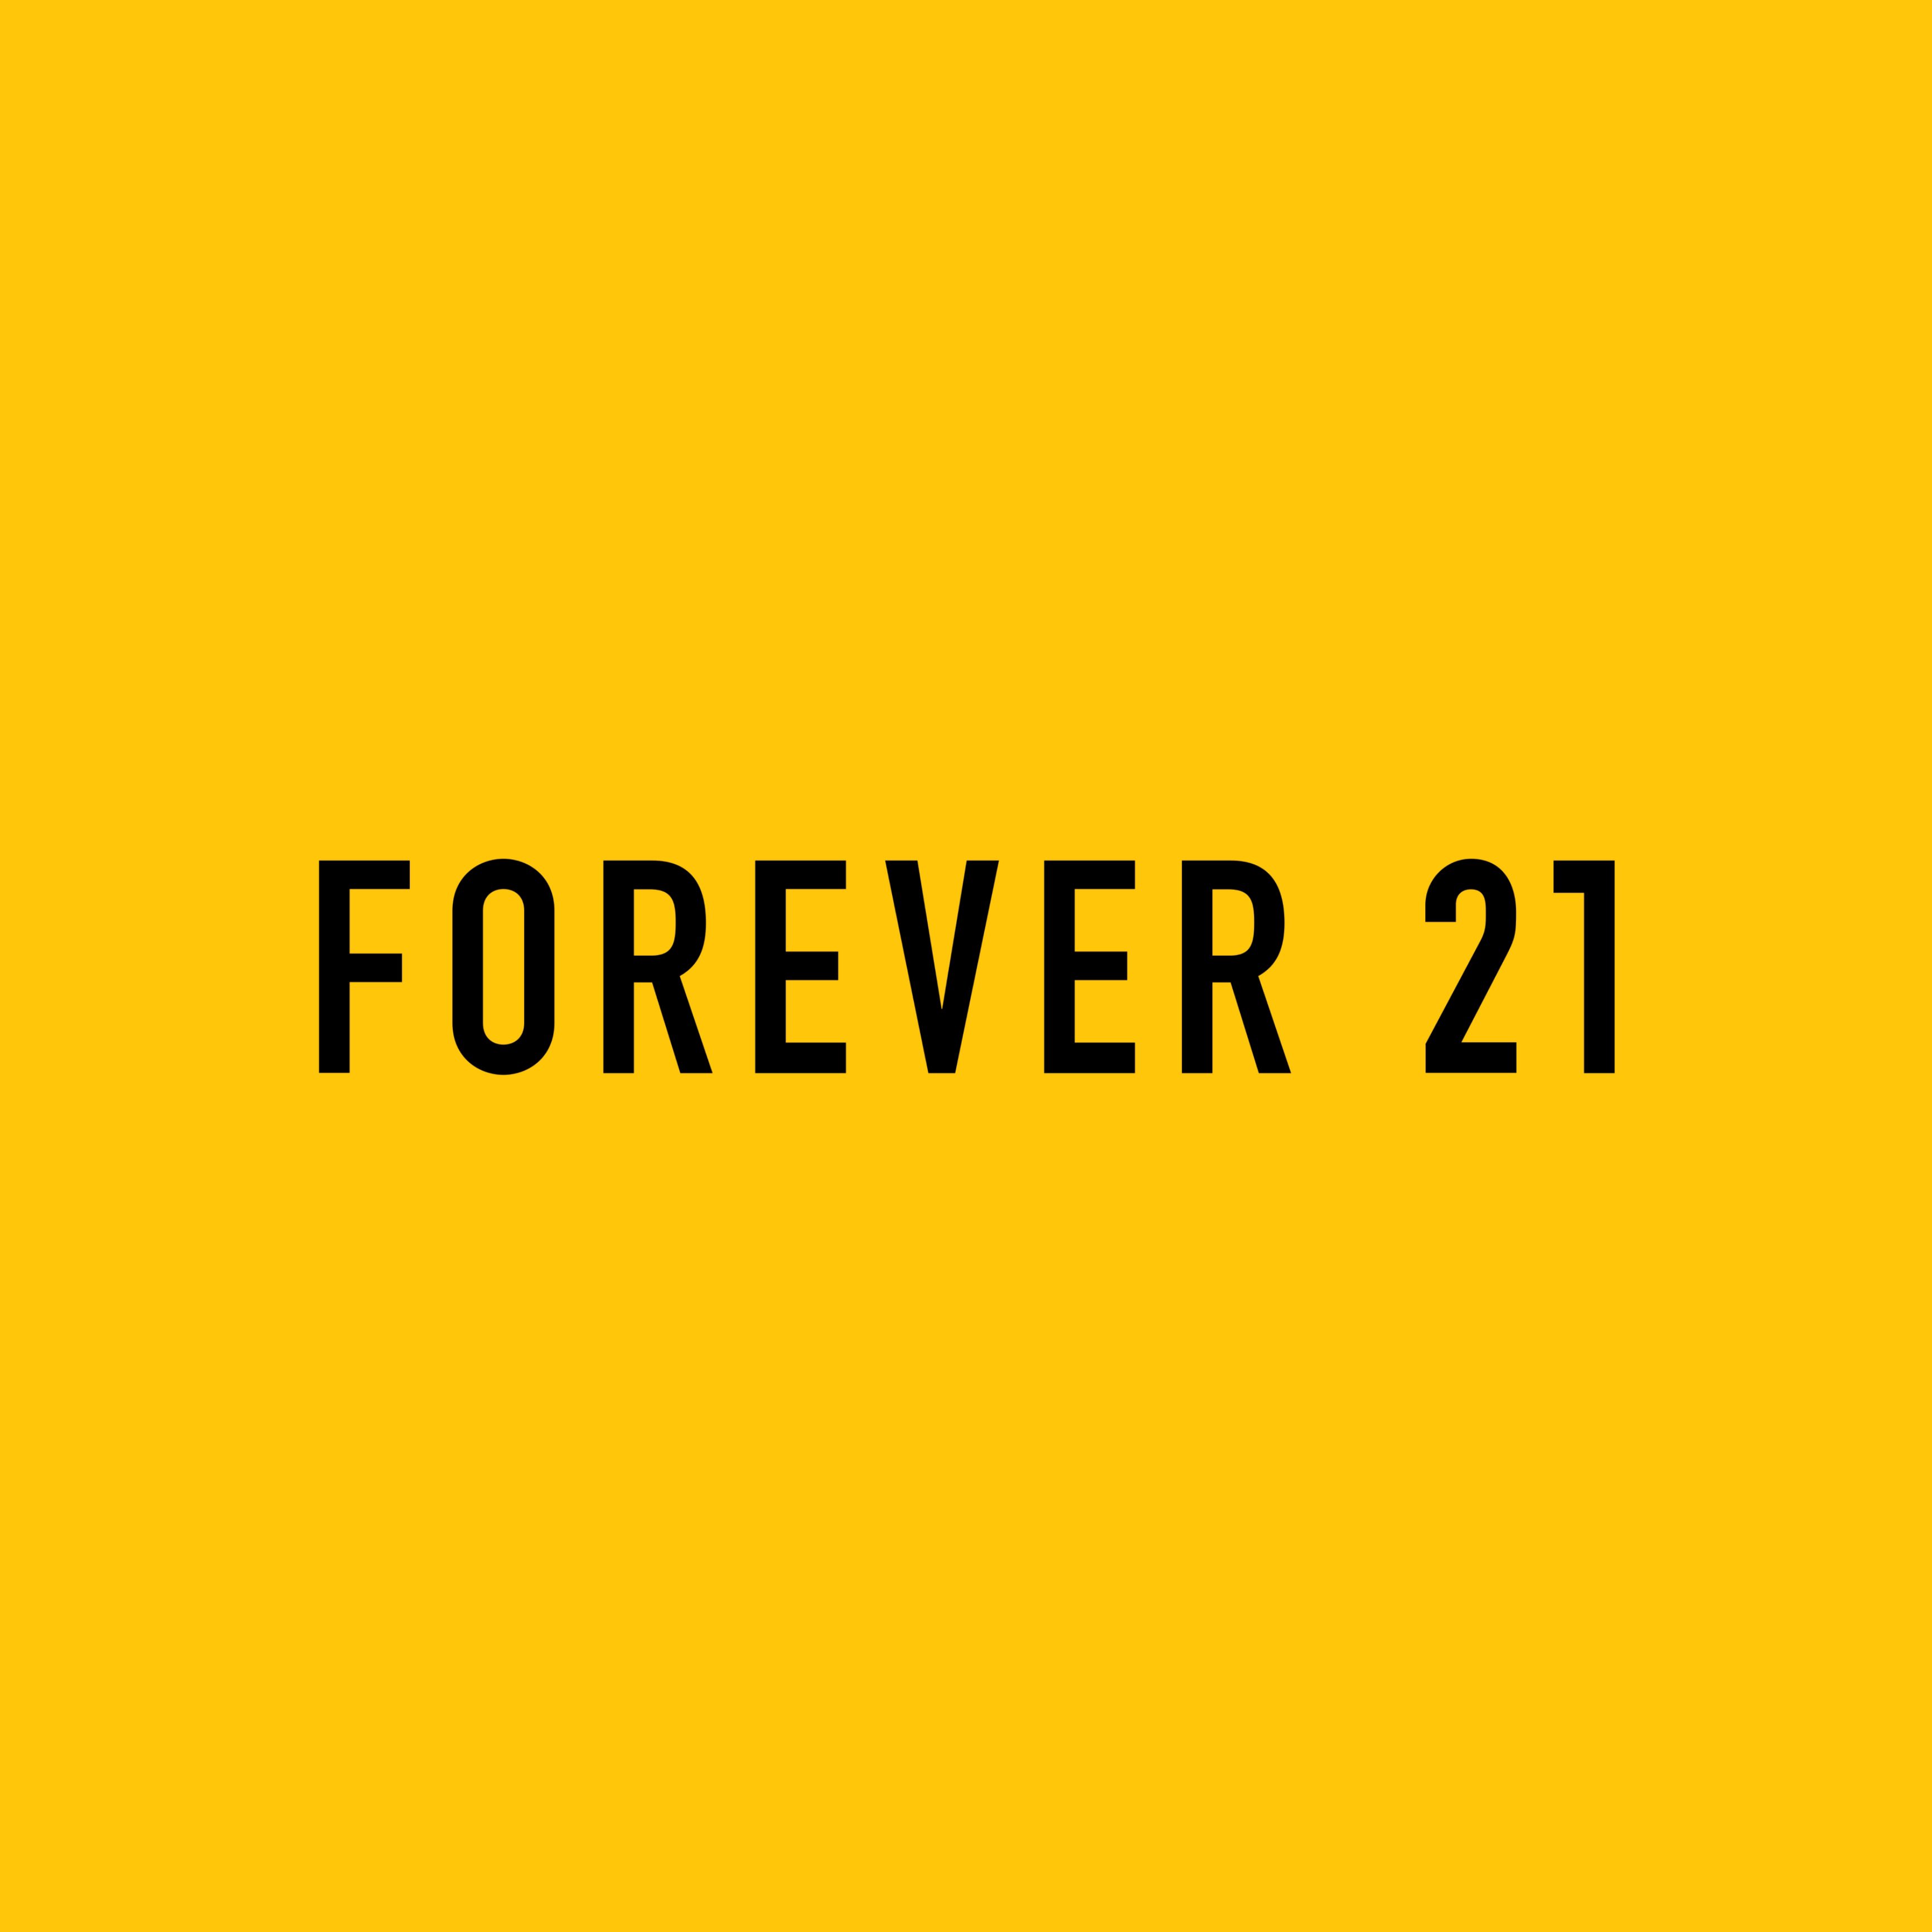 Shein fecha acordo e vai vender produtos da Forever 21